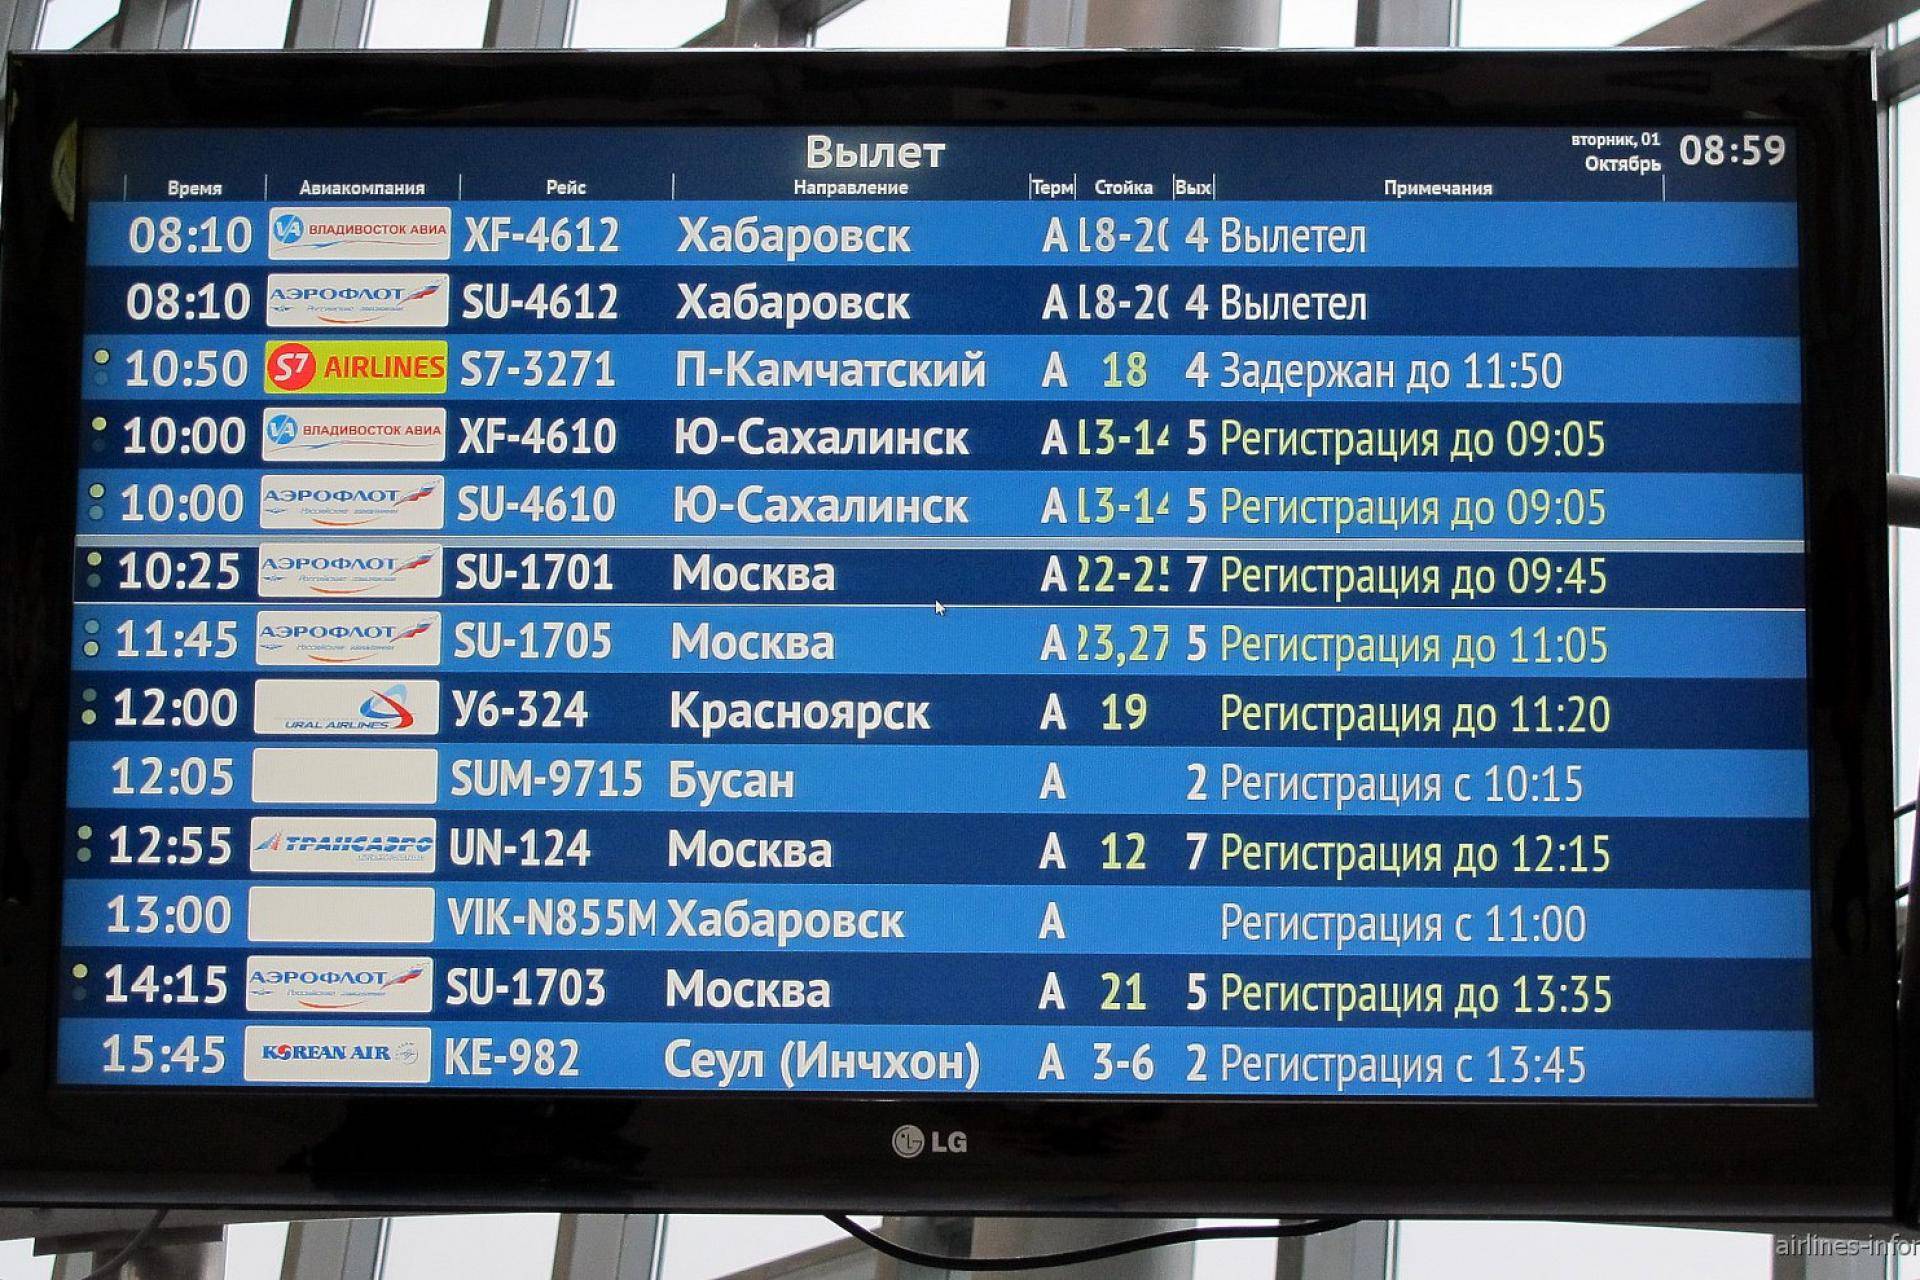 Международный аэропорт сейшелы - расписание рейсов, как добраться, парковки, услуги, отели, авиакомпании